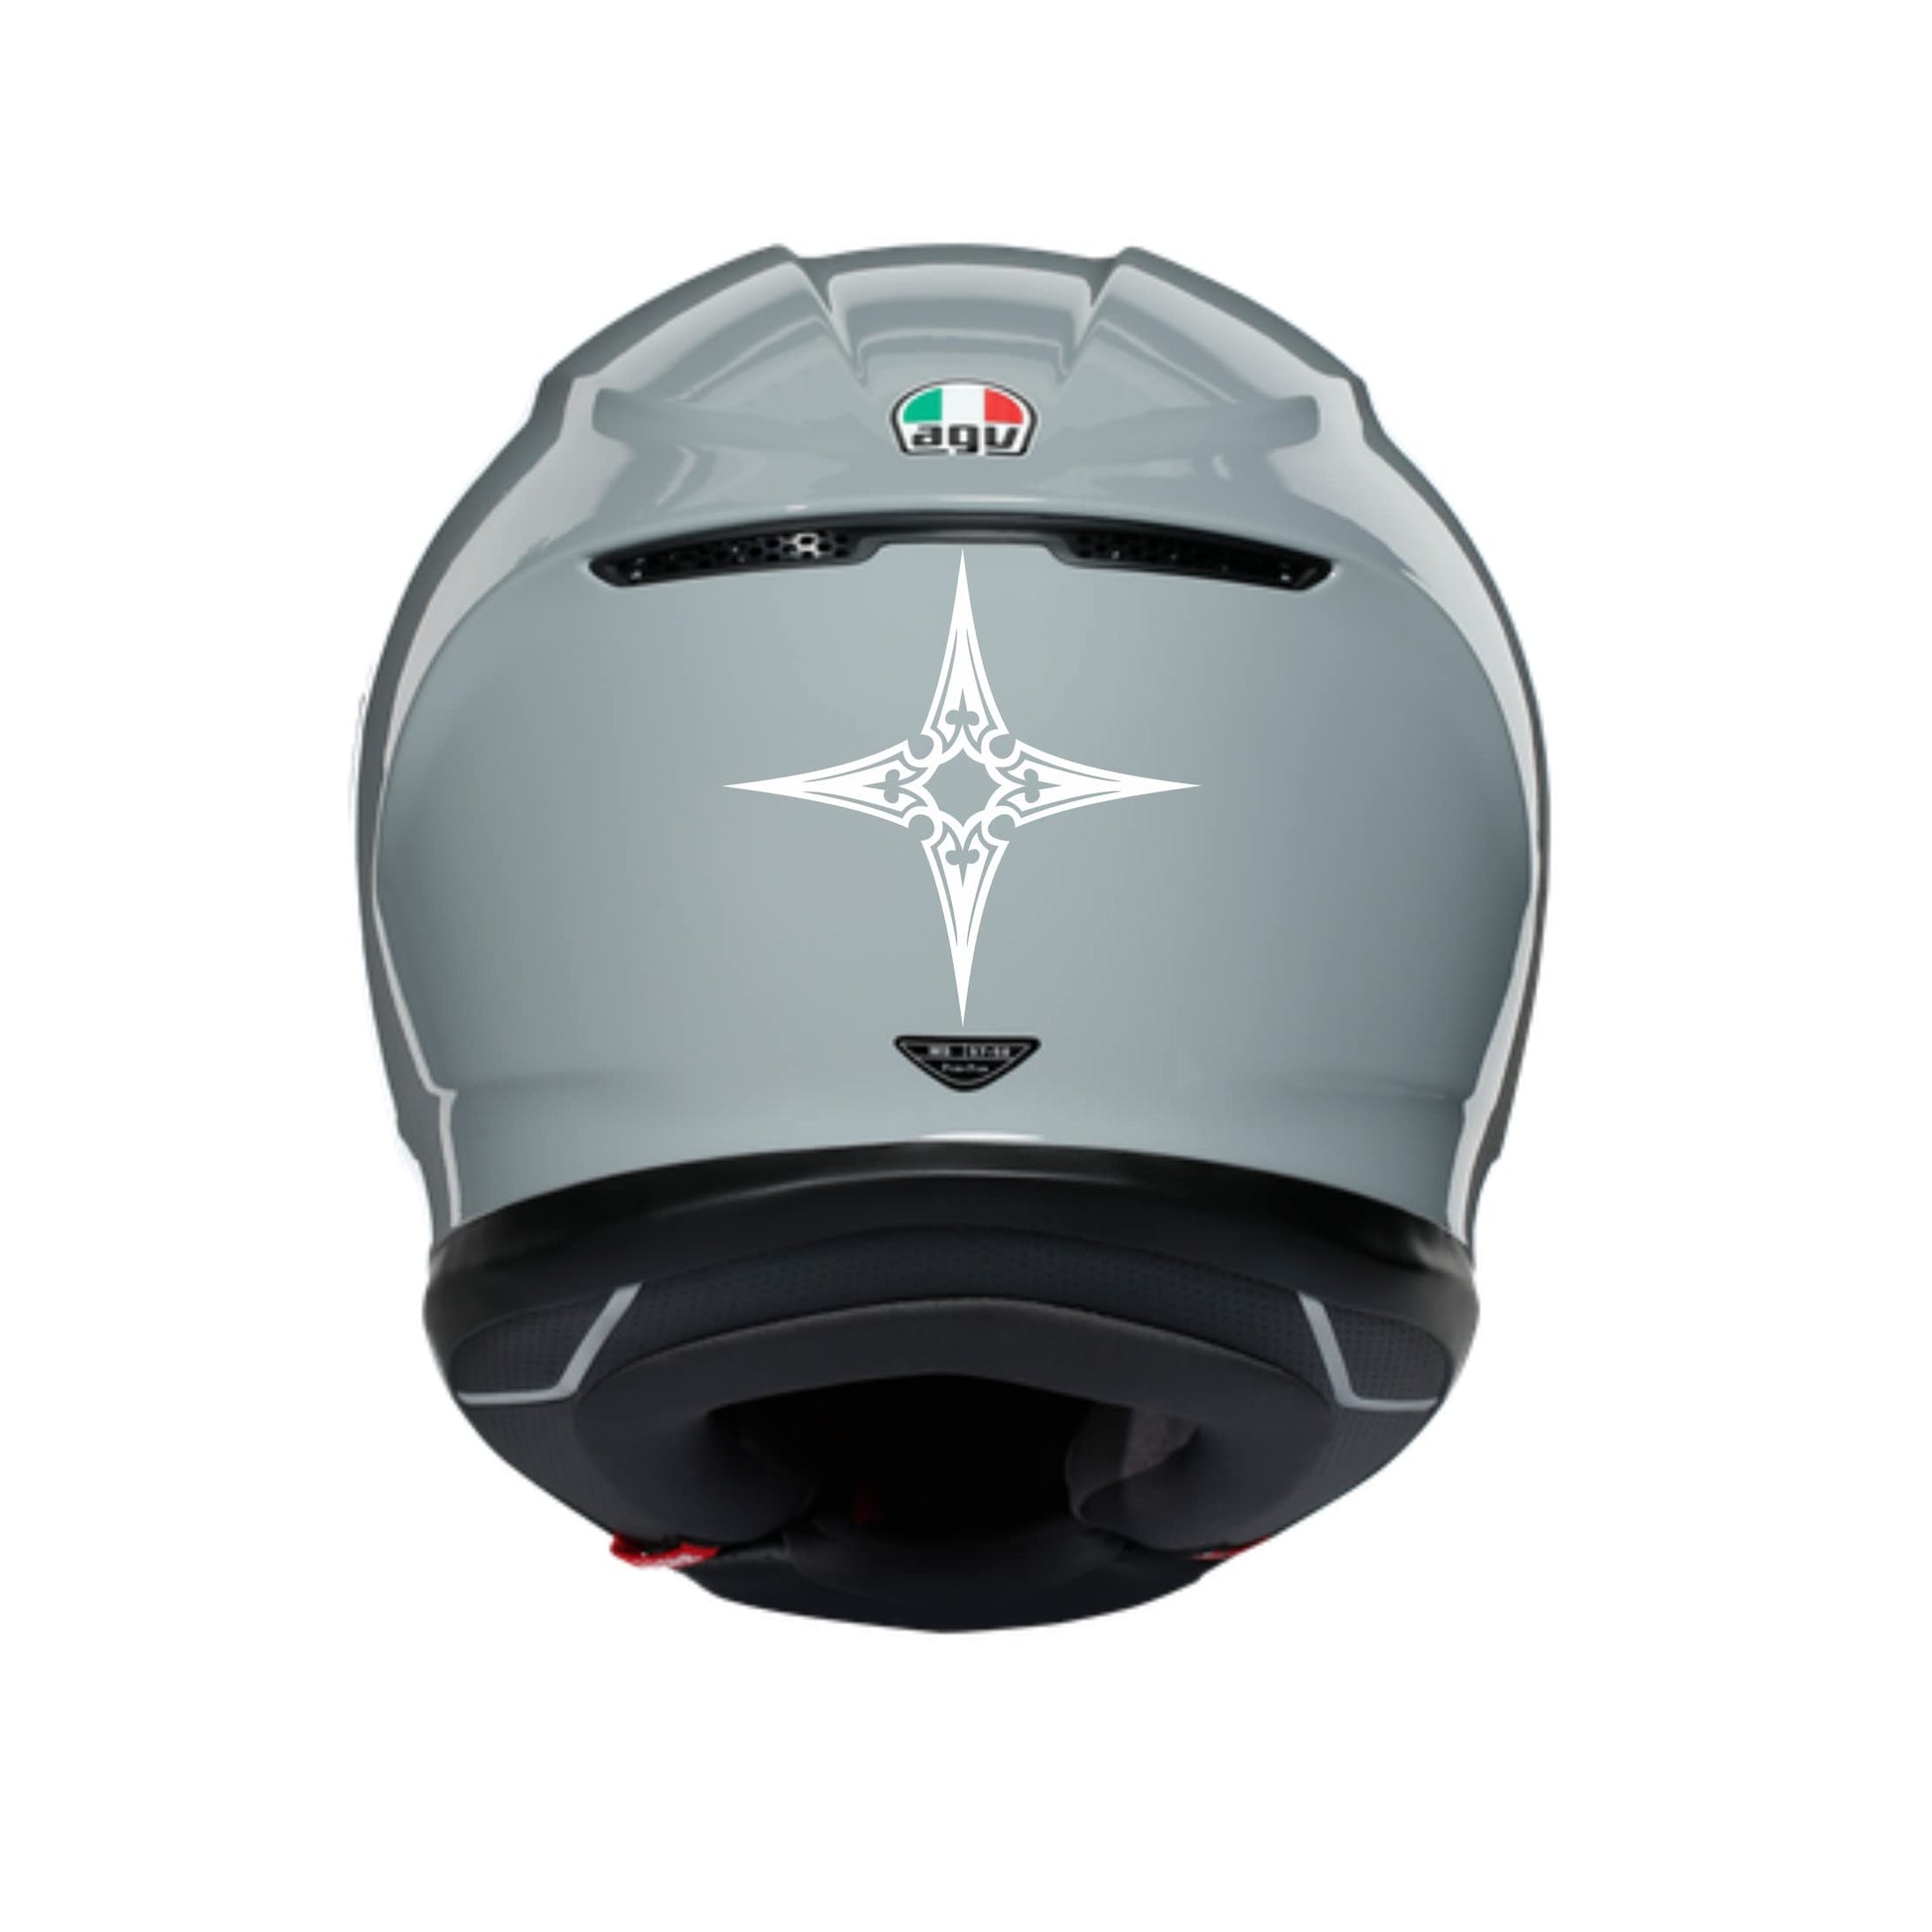 Adesivi Tribali CASCO ACCESSORI MOTO decorazione per scooter casco (2 PZ ) vinile colore a scelta COD.C0032 a €9.99 solo da DualColorStampe